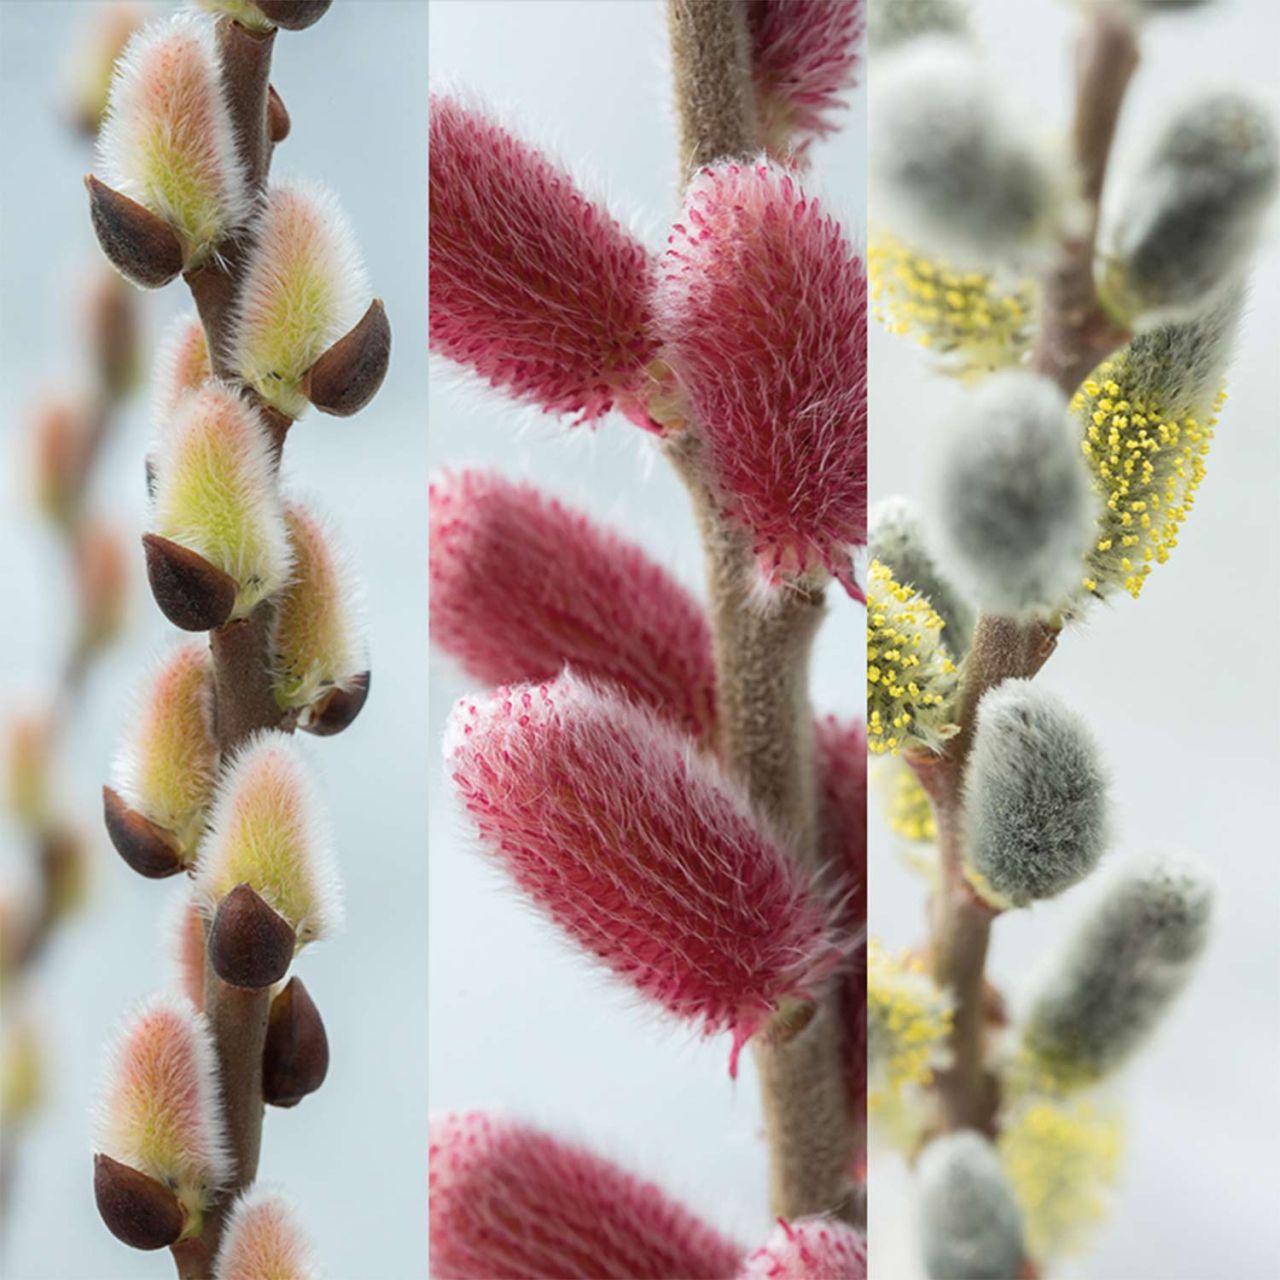 Kategorie <b>Blütensträucher und Ziergehölze </b> - Kätzchenweide-Trio - Salix gracilistyla